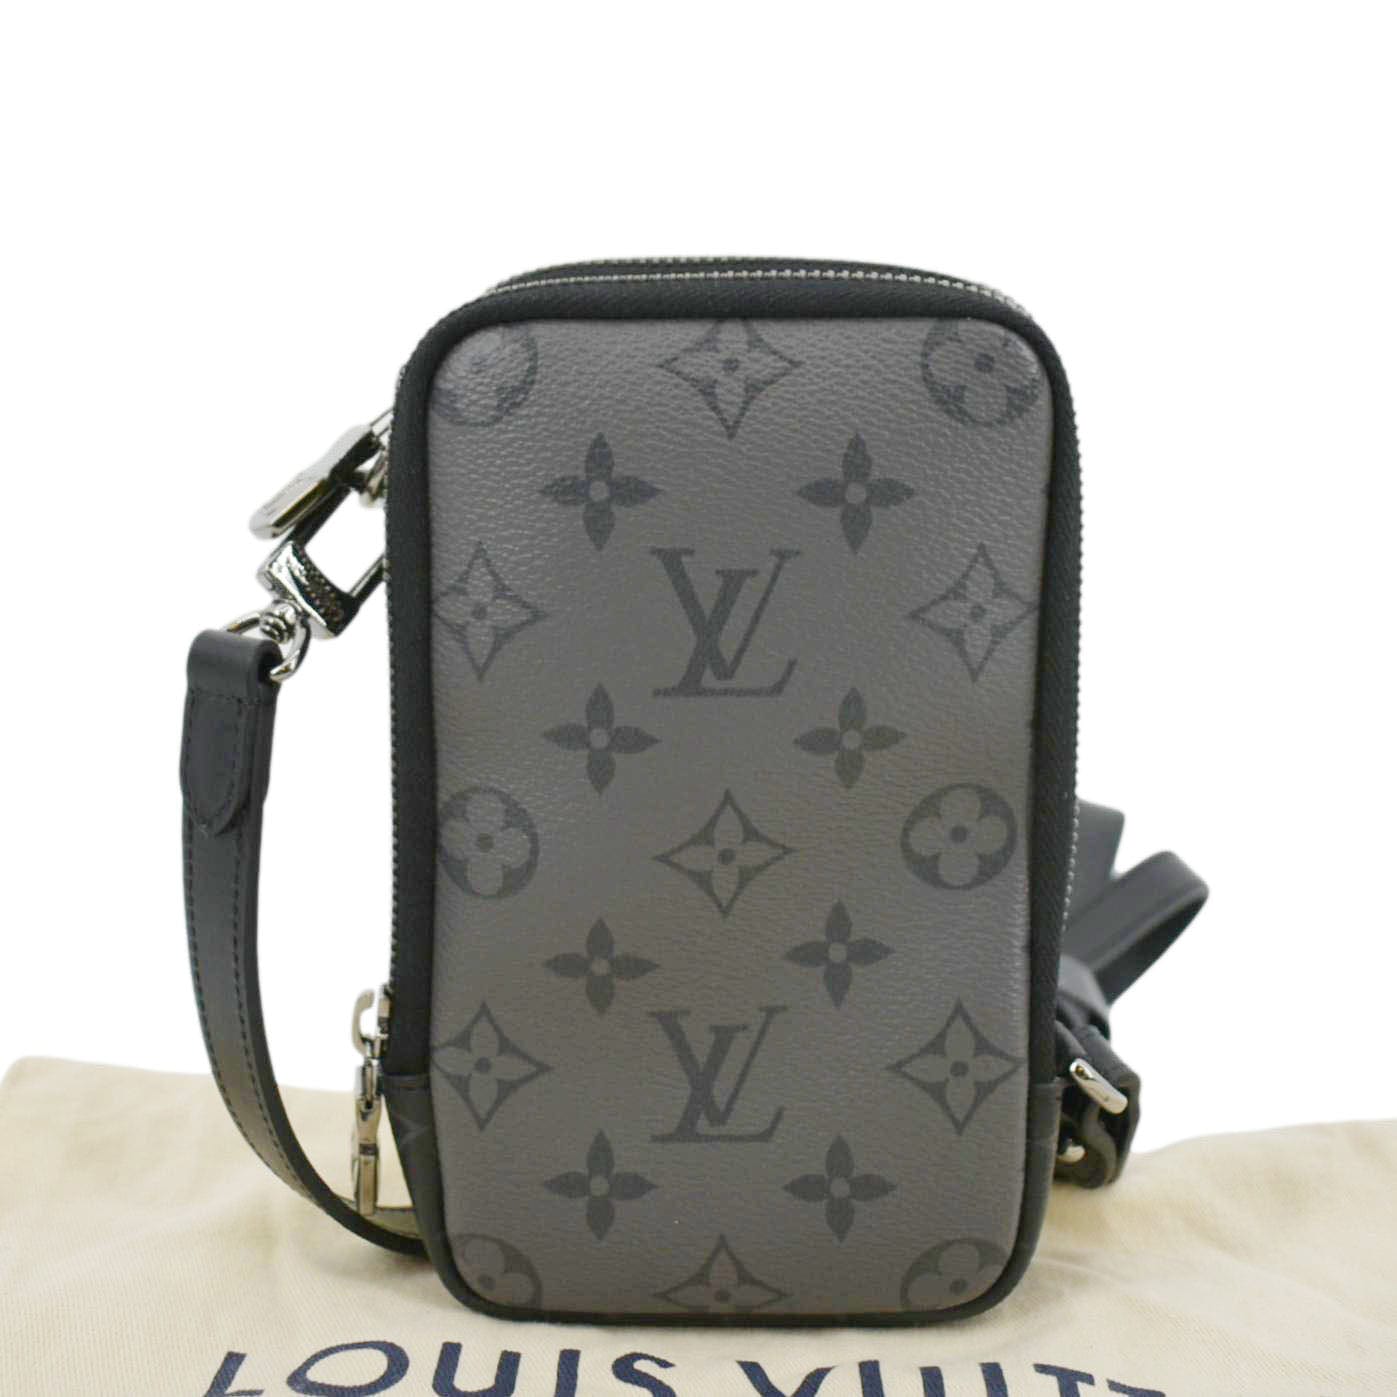 Louis Vuitton Double Phone Pouch – The Luxury Shopper